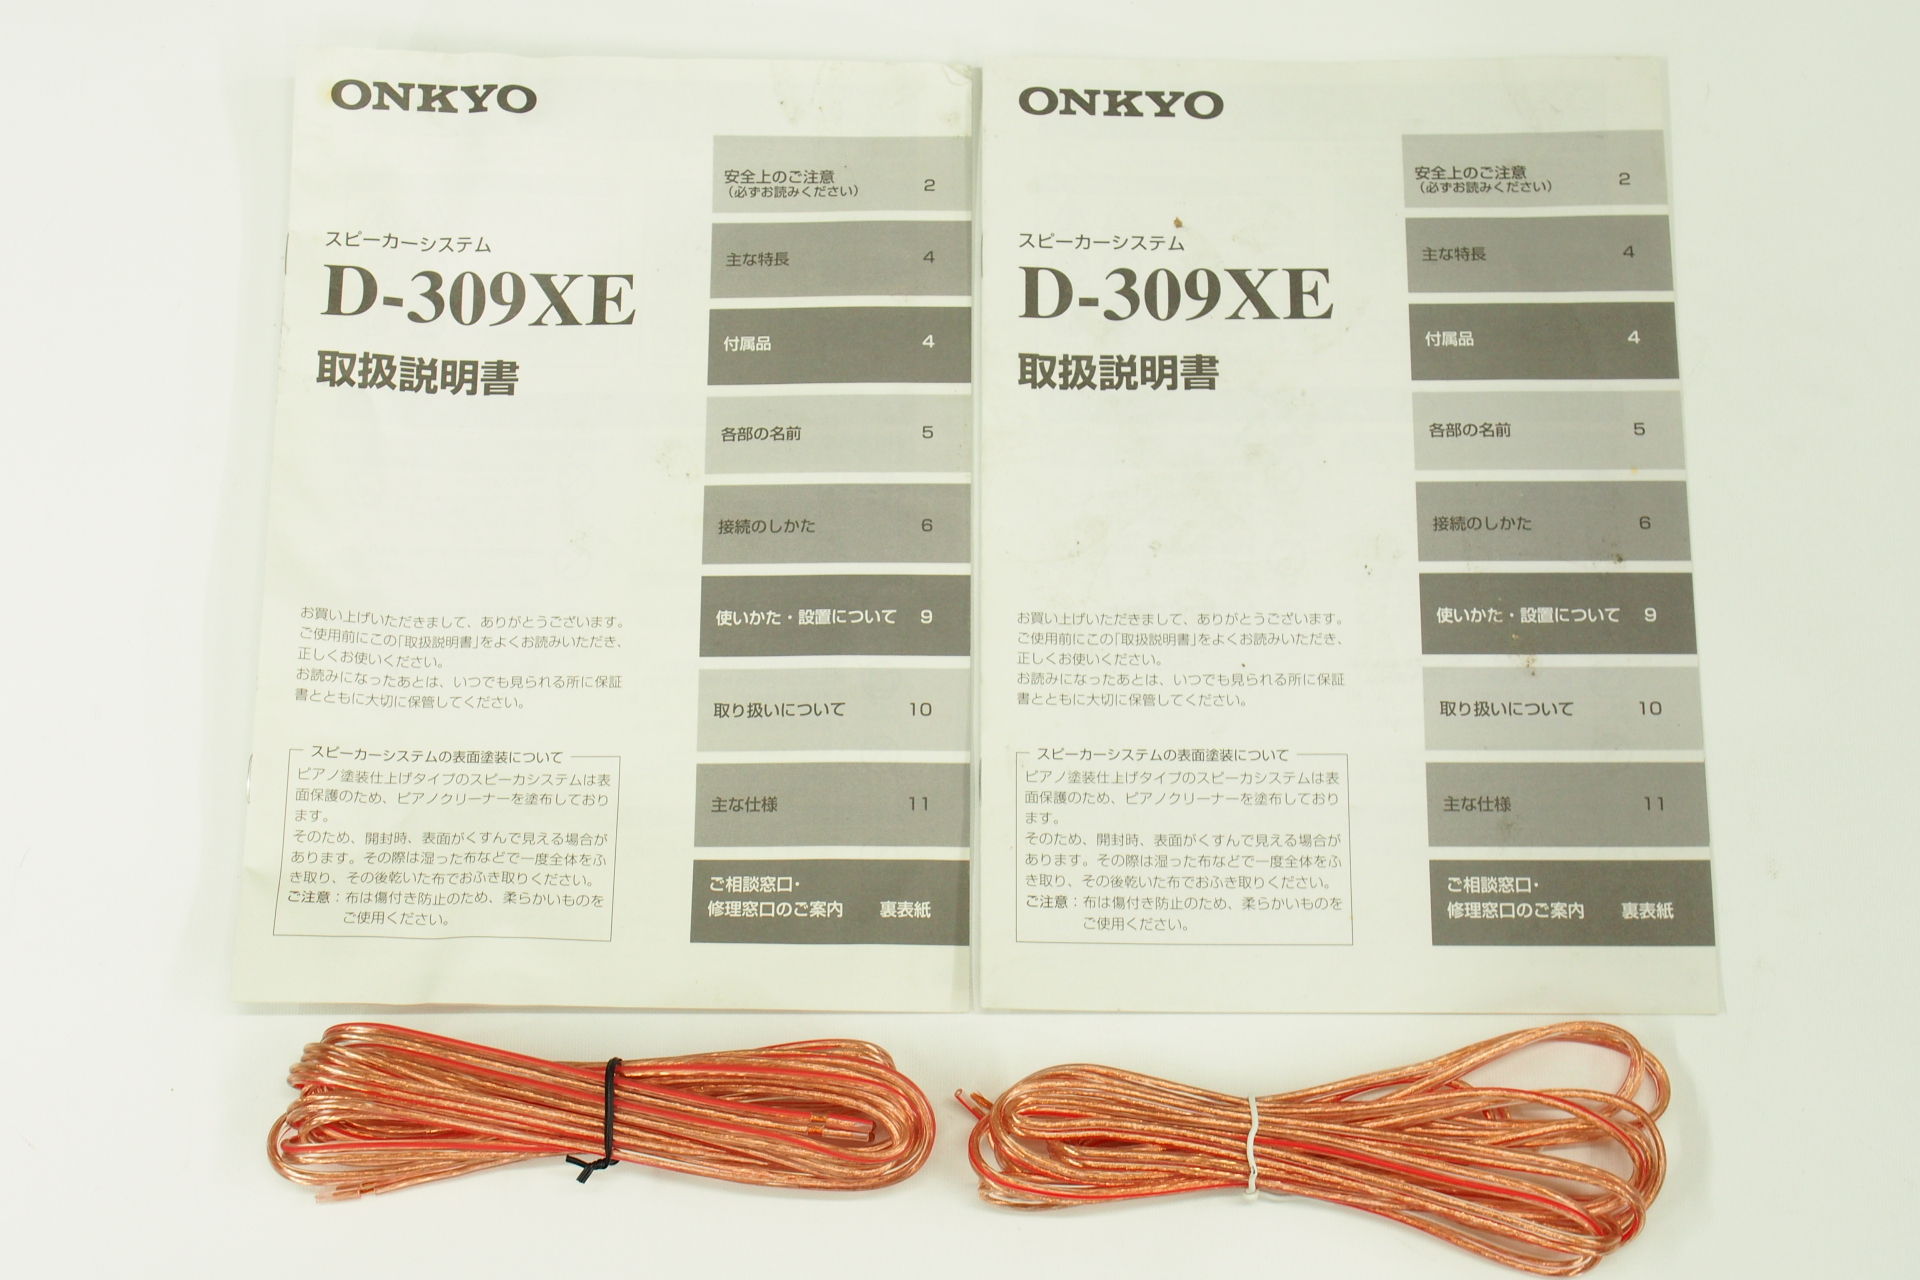 アバックWEB-SHOP / 【中古】ONKYO D-309XE(D)【コード01-08970